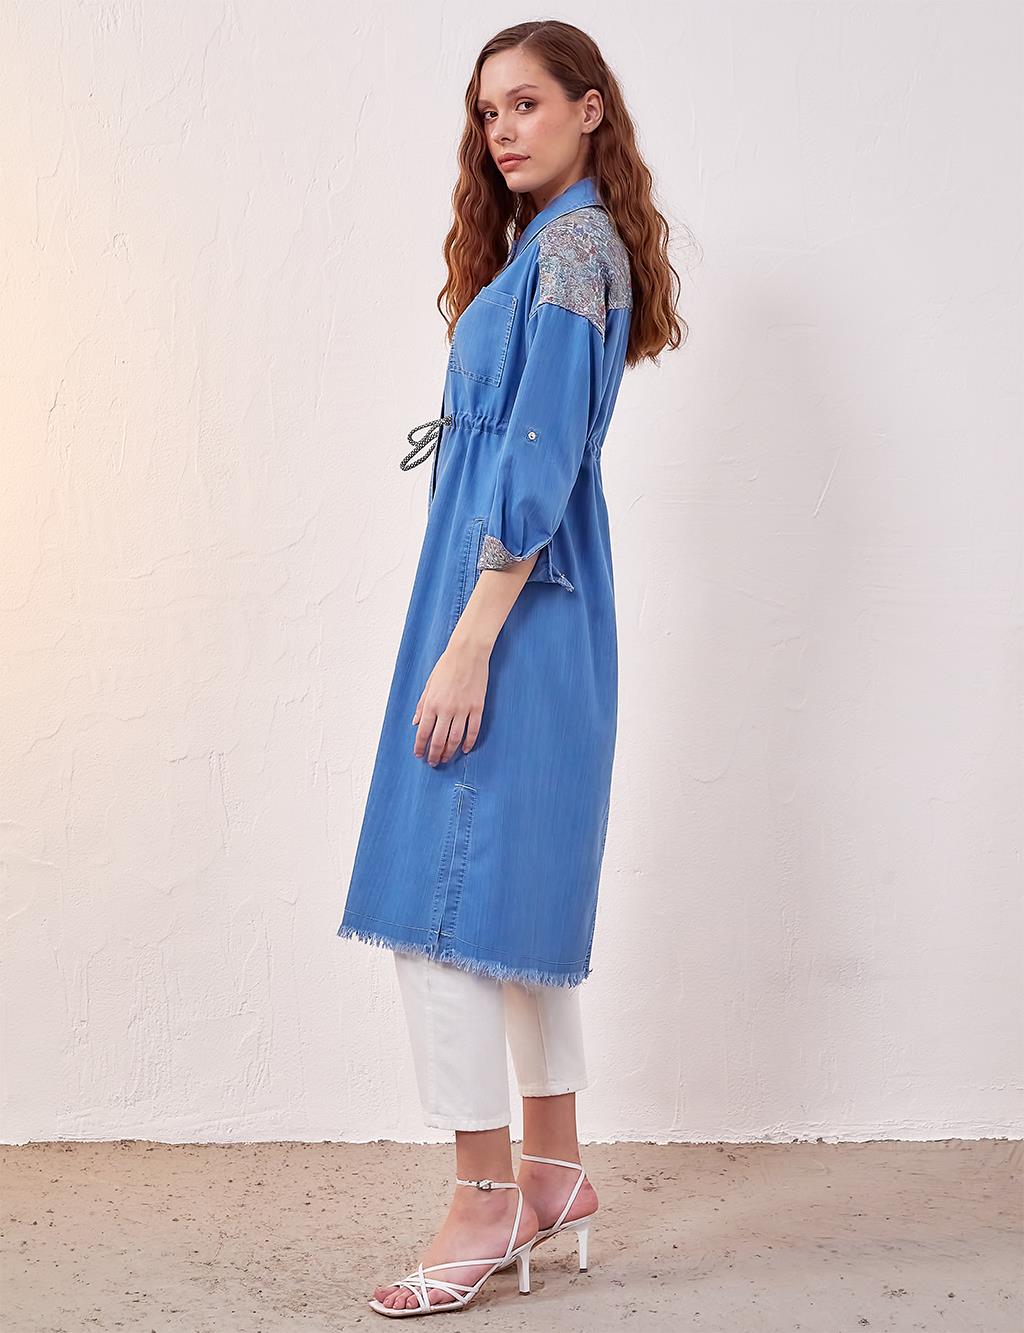 Skirt Tasseled Denim Abaya Blue